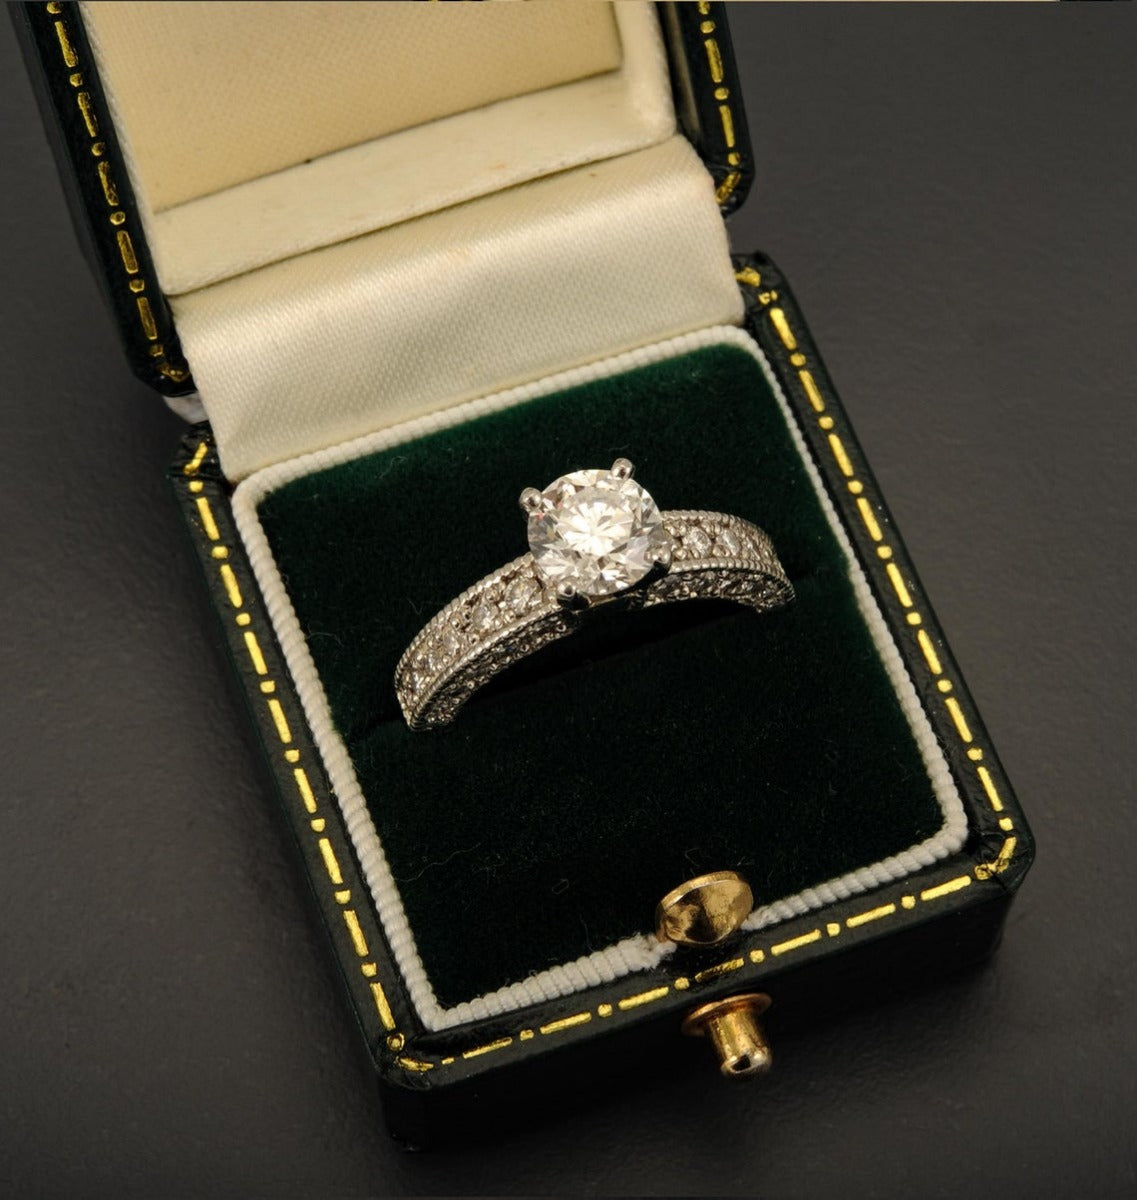 Platinum IGI Certified Brilliant Cut Diamond Solitaire Ring